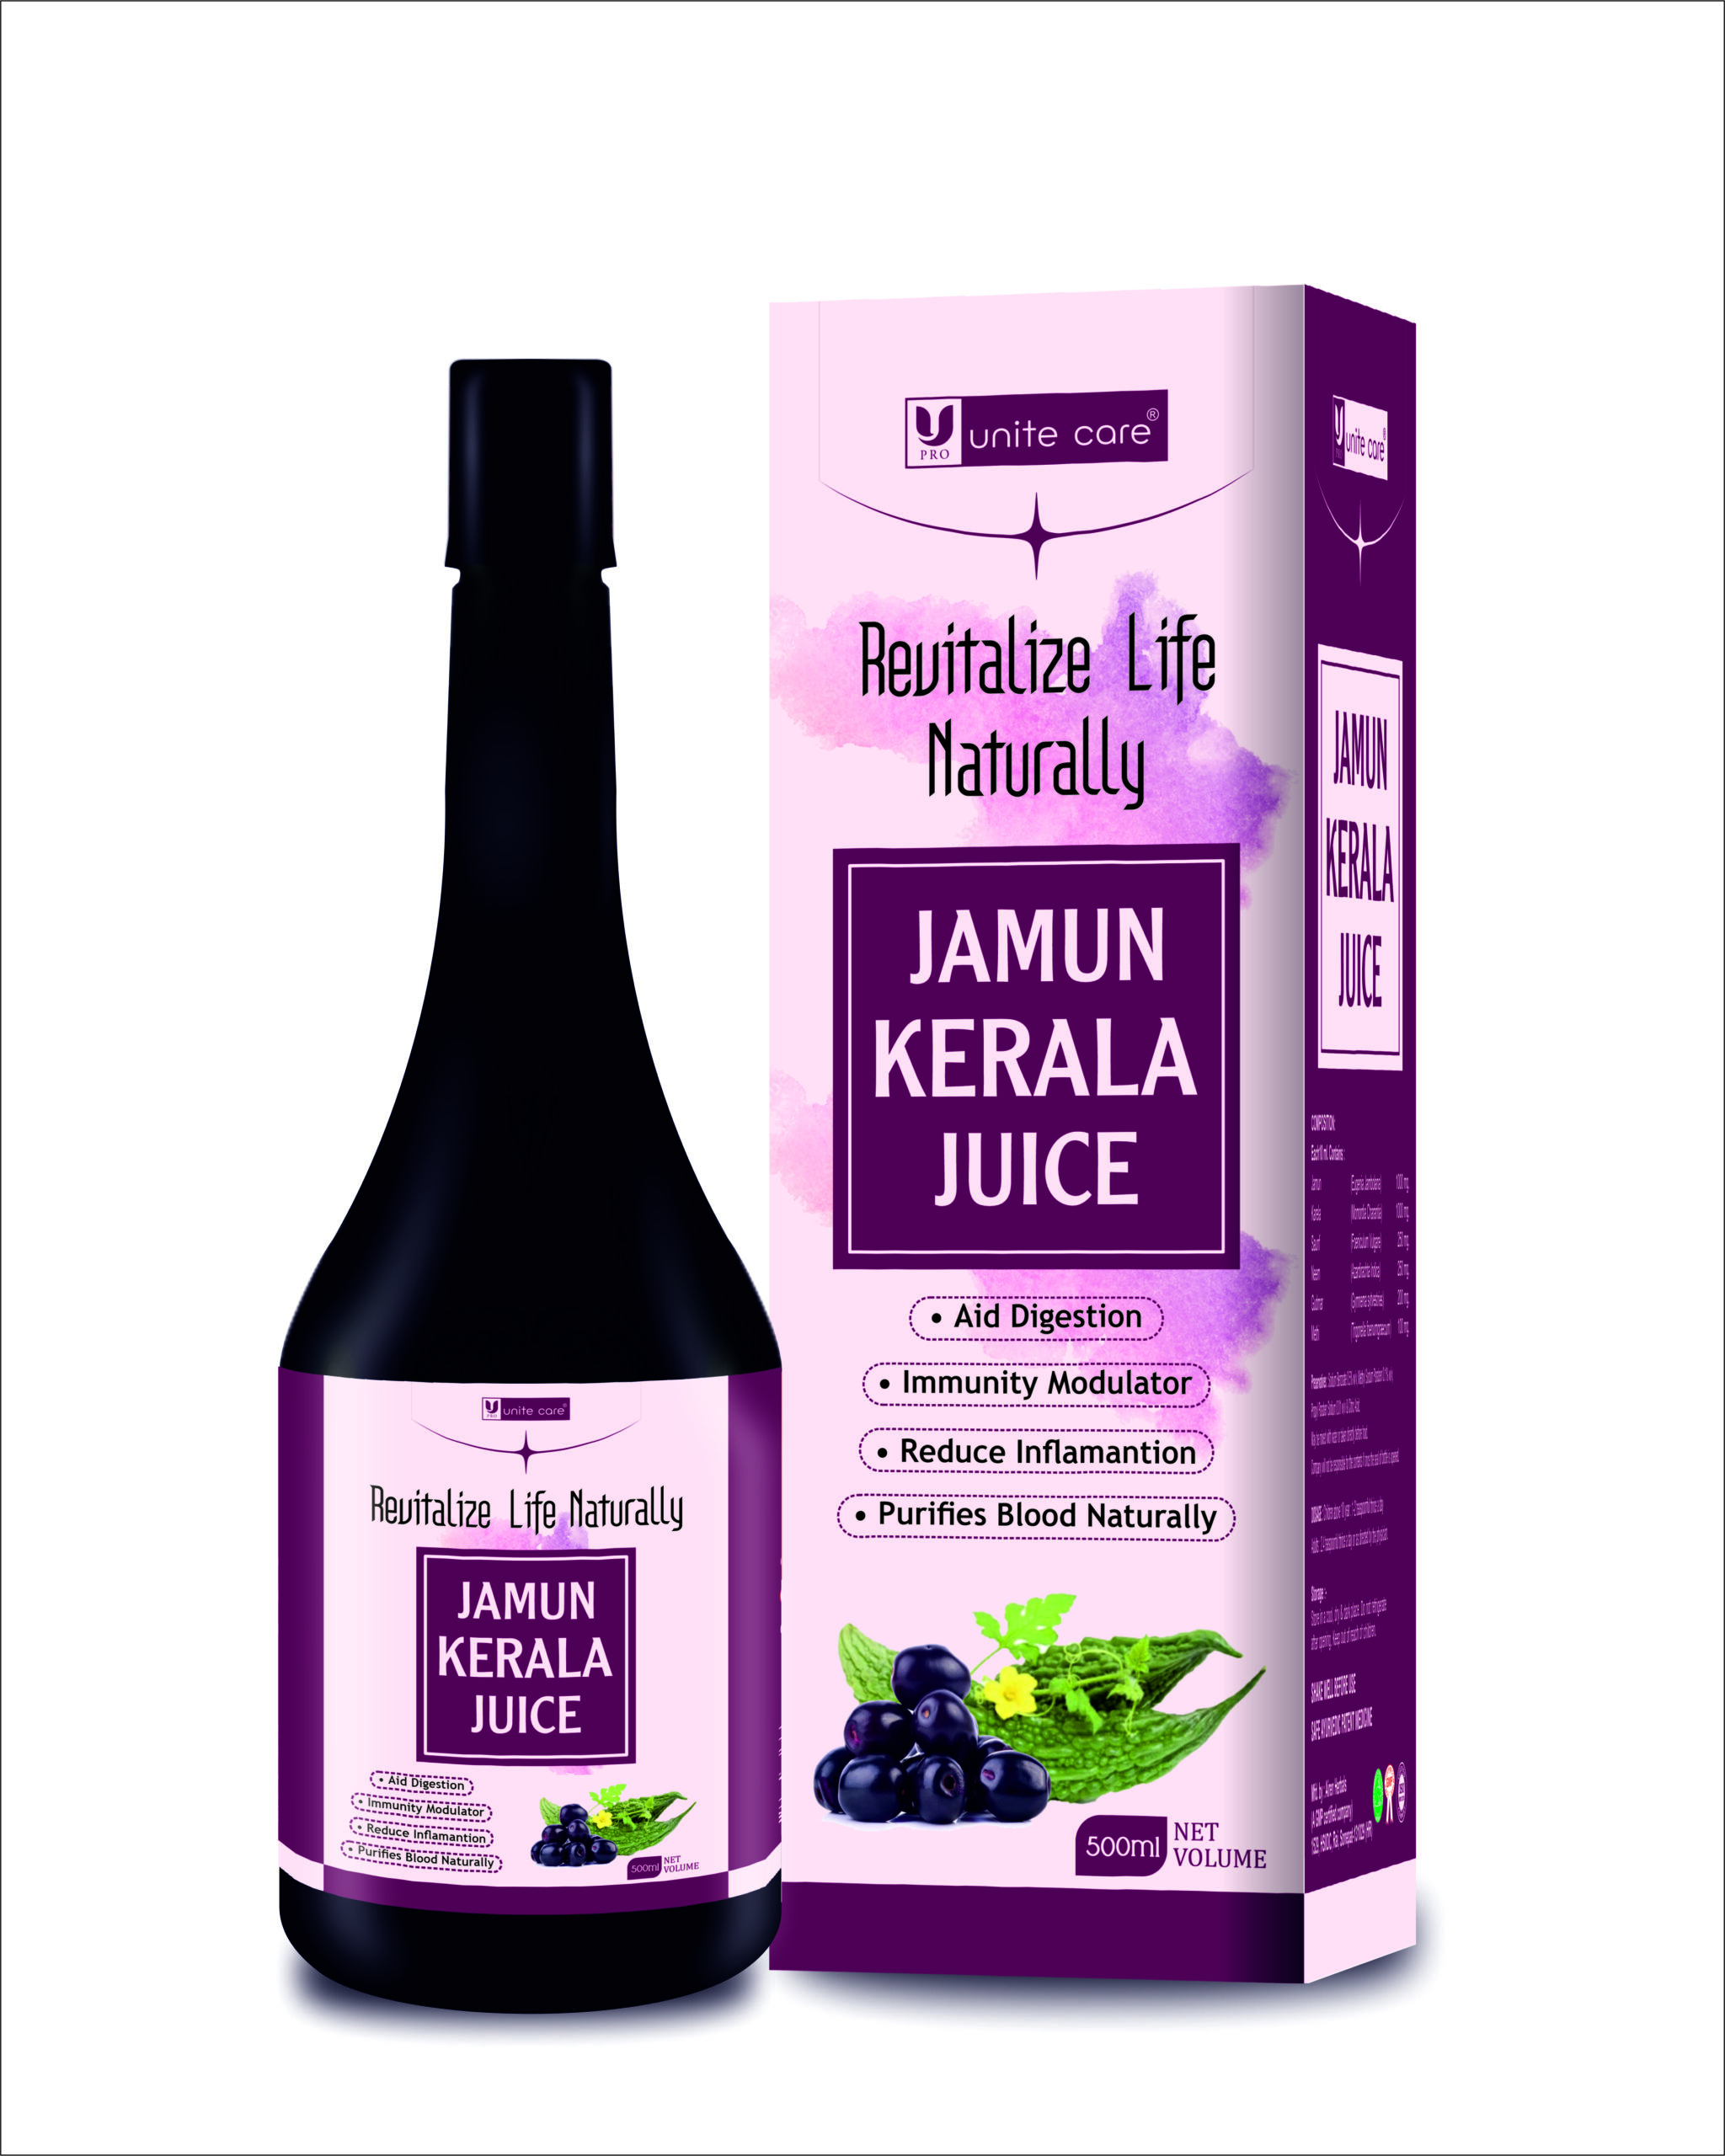 Jamun Karela Juice